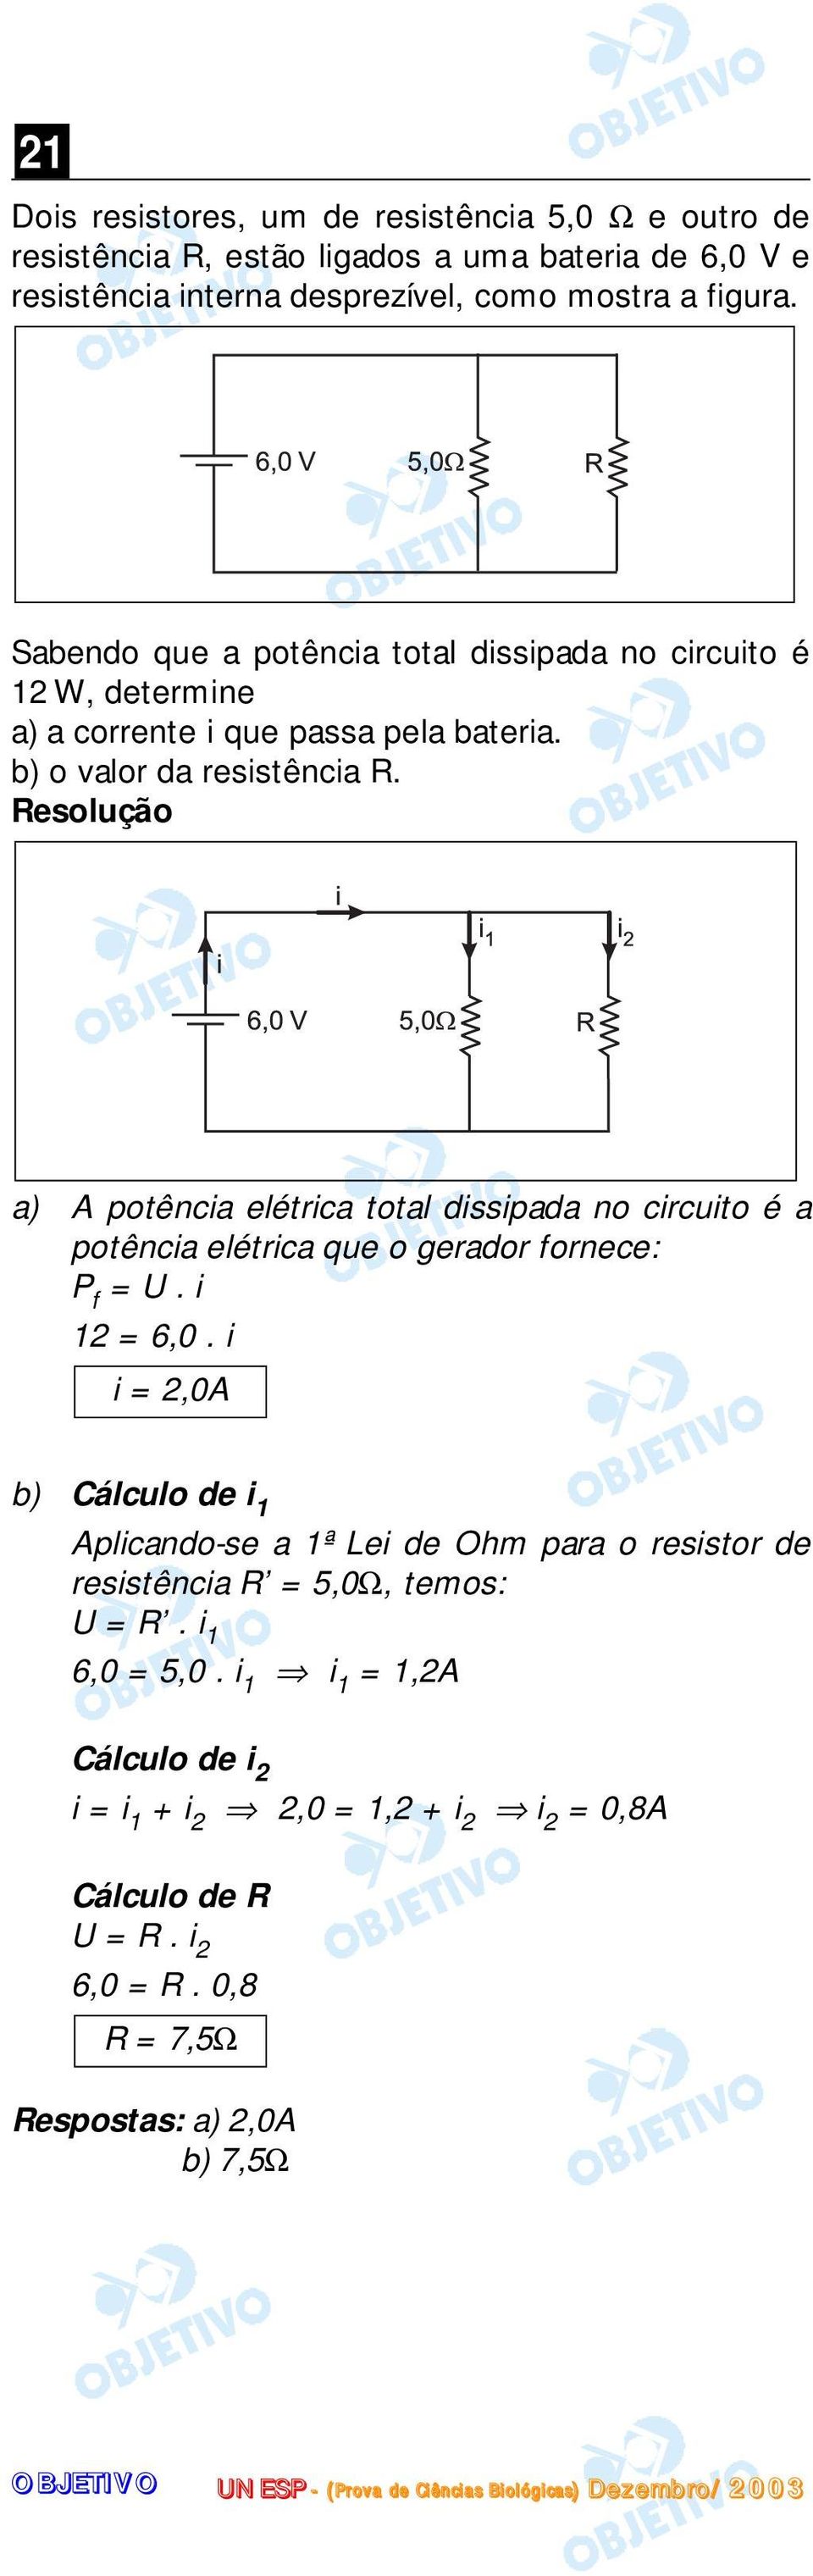 a) A potência elétrica total dissipada no circuito é a potência elétrica que o gerador fornece: P f = U. i 1 = 6,0.